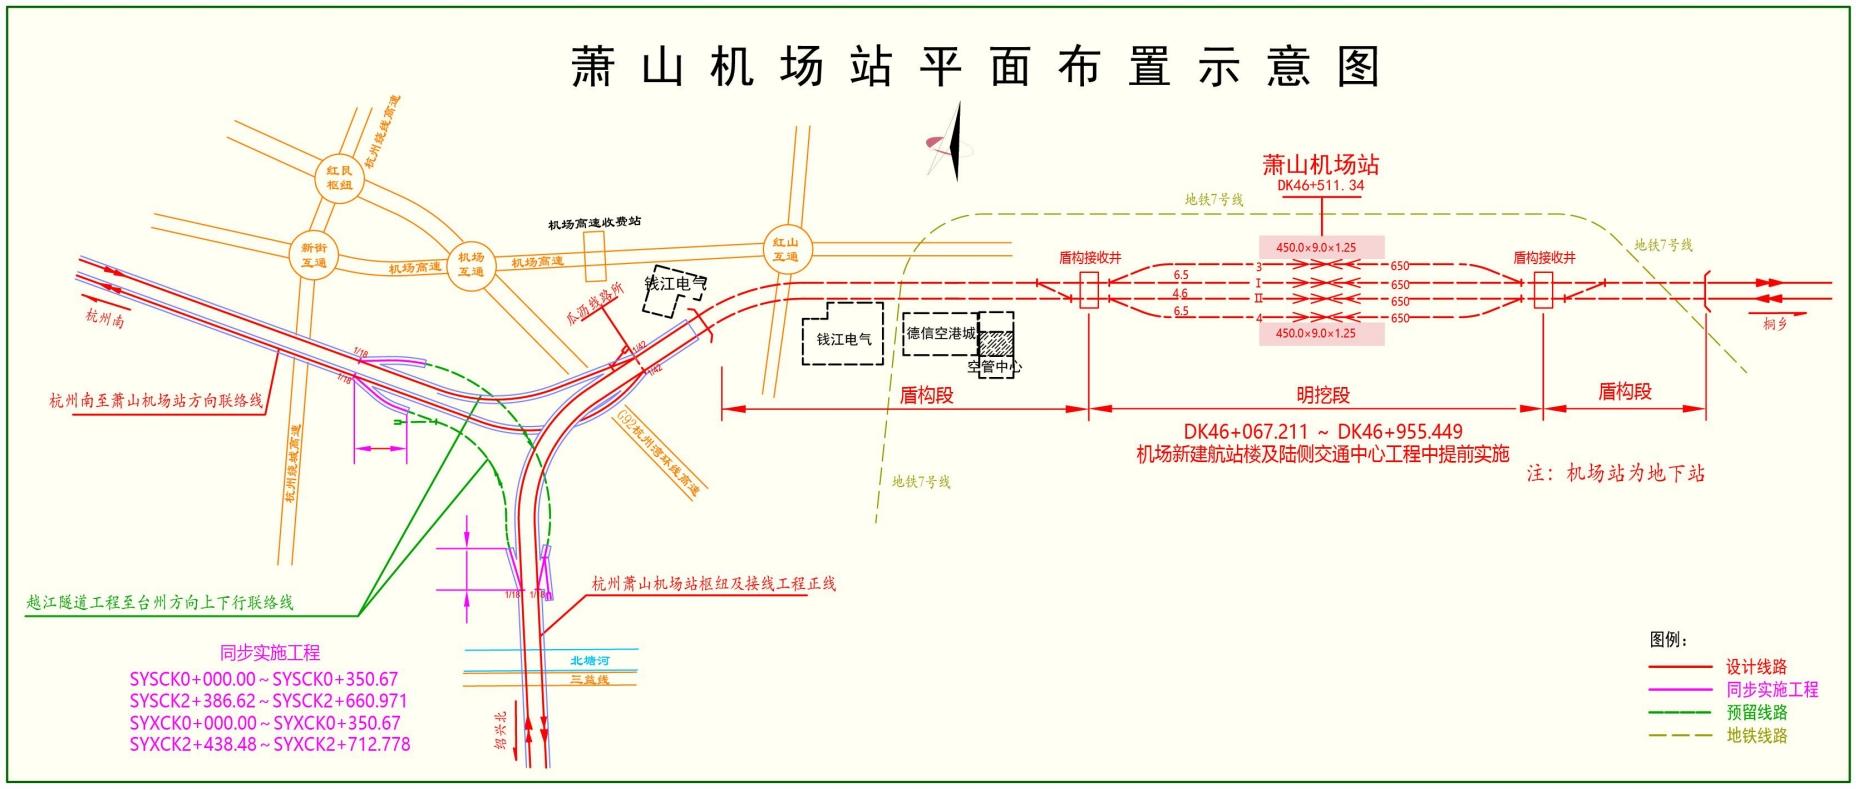 对新建铁路杭州萧山机场站枢纽及接线工程环境影响报告书征求意见稿